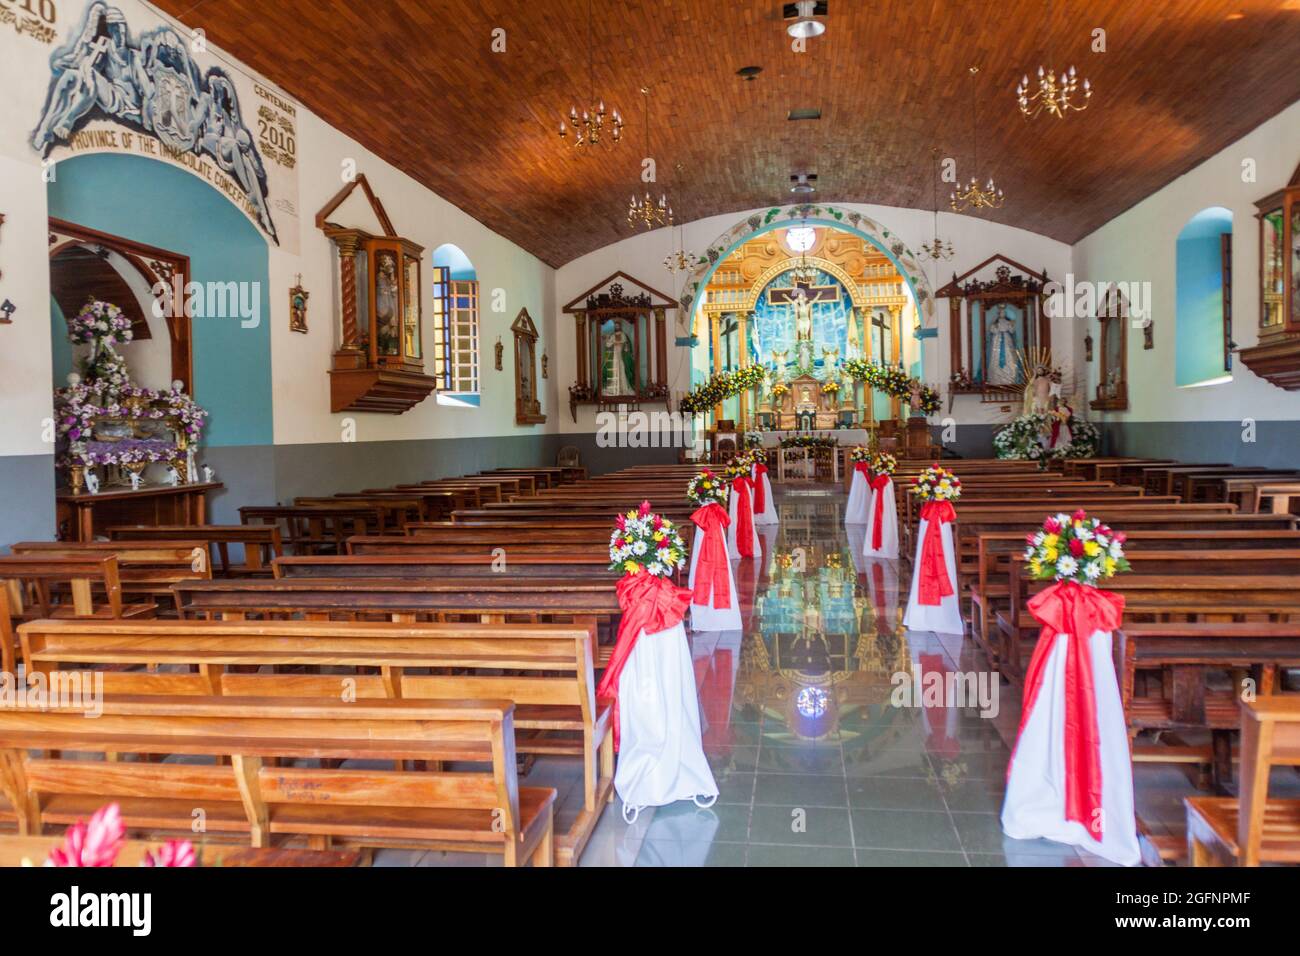 CONCEPCION DE ATACO, EL SALVADOR - 3 AVRIL 2016 : intérieur de l'église du village de Concepcion de Ataco. Banque D'Images